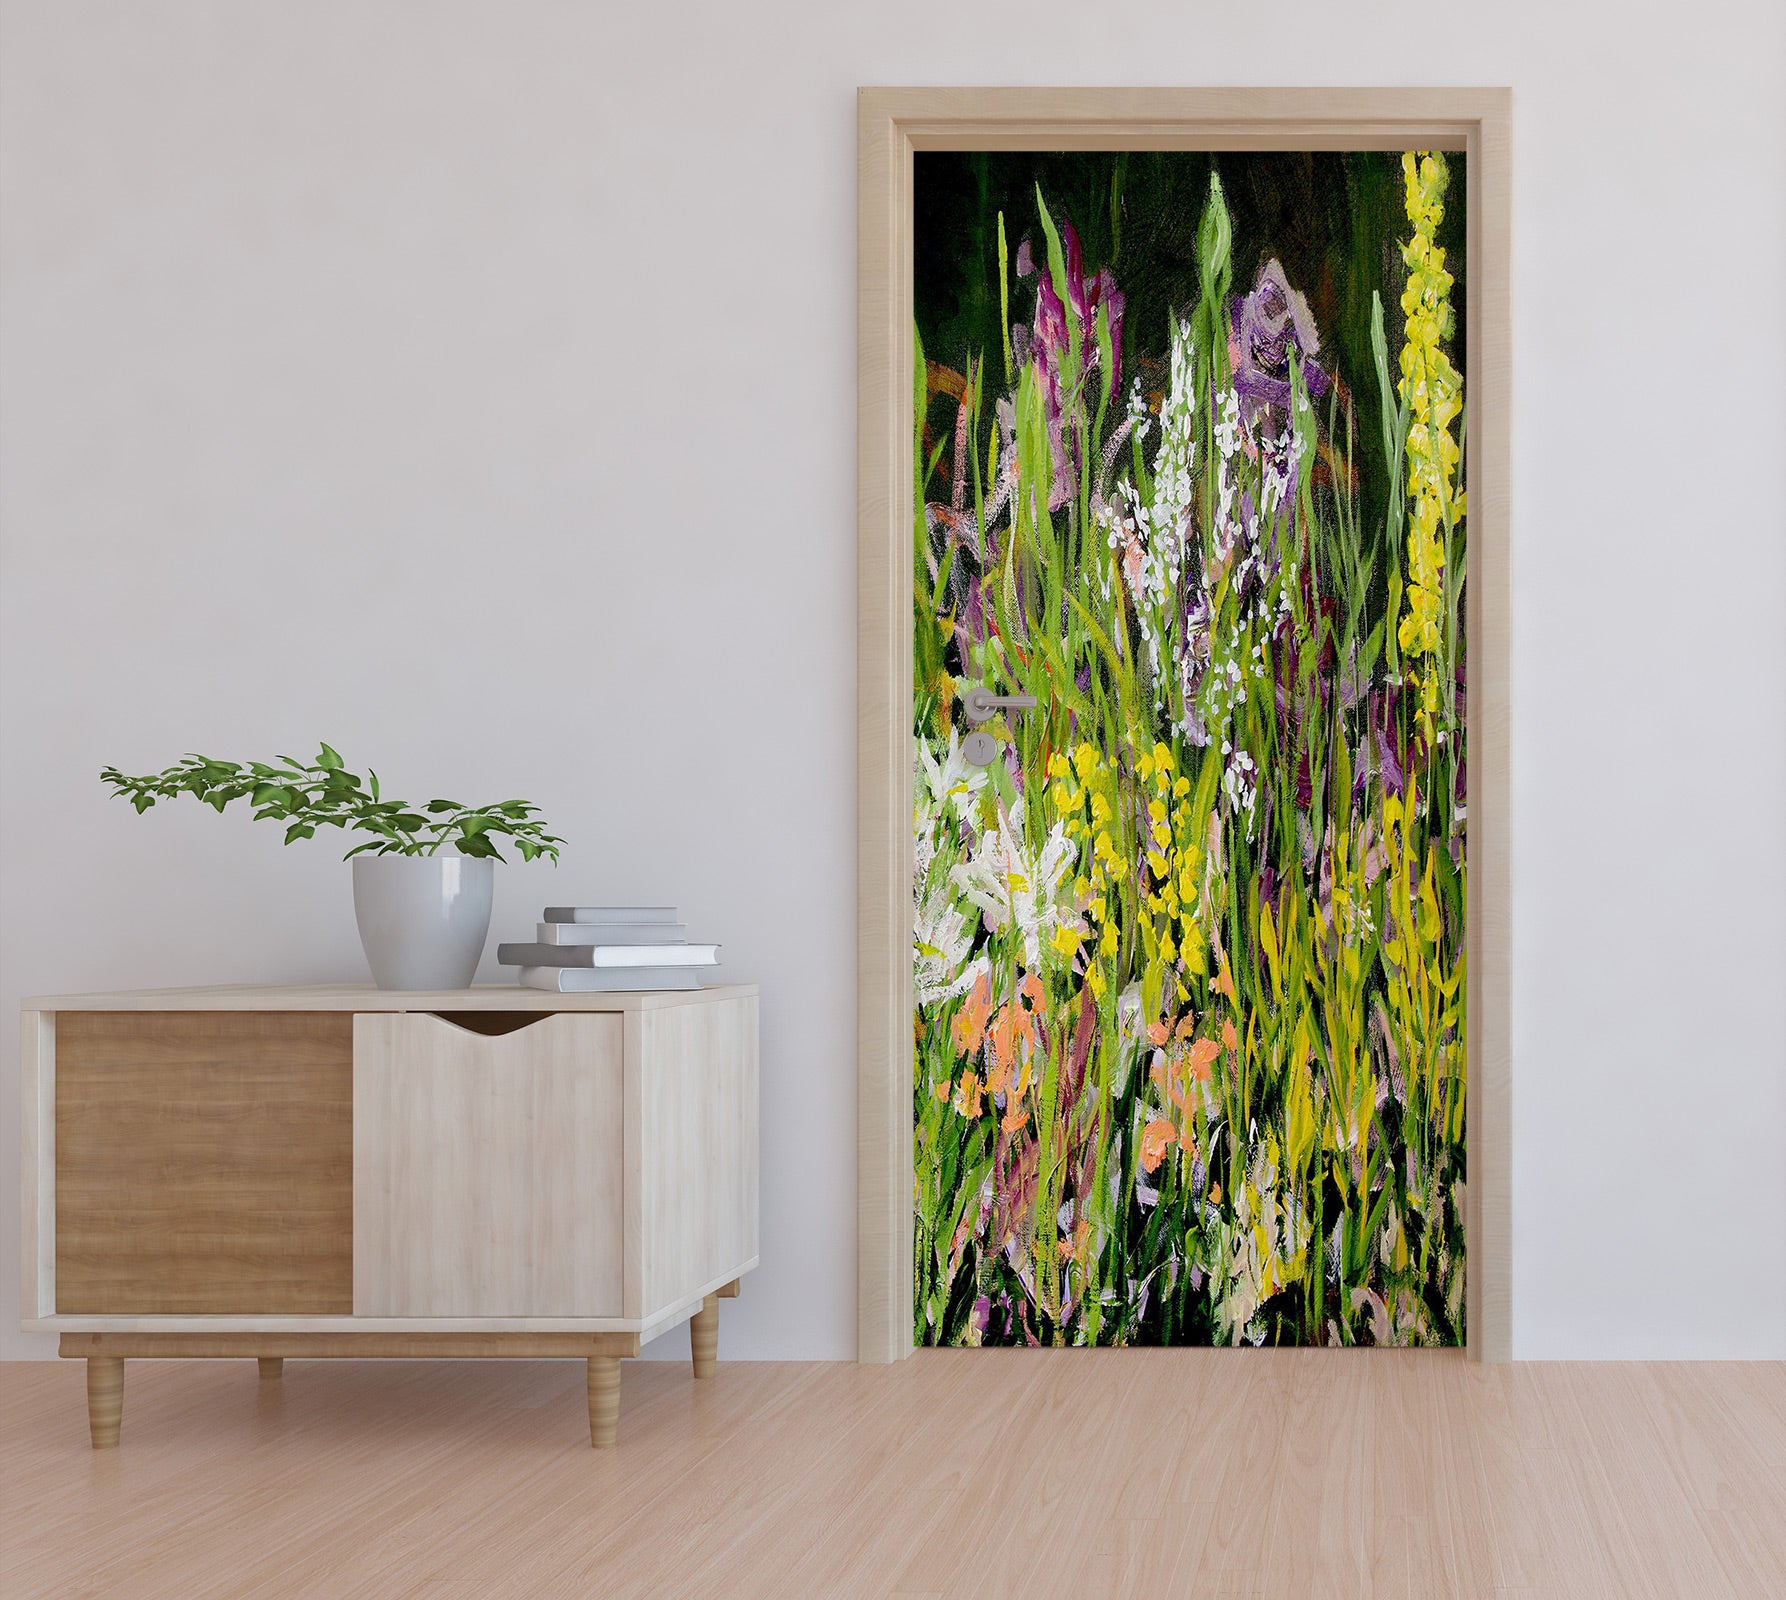 3D Grass Flowers Painting 93147 Allan P. Friedlander Door Mural